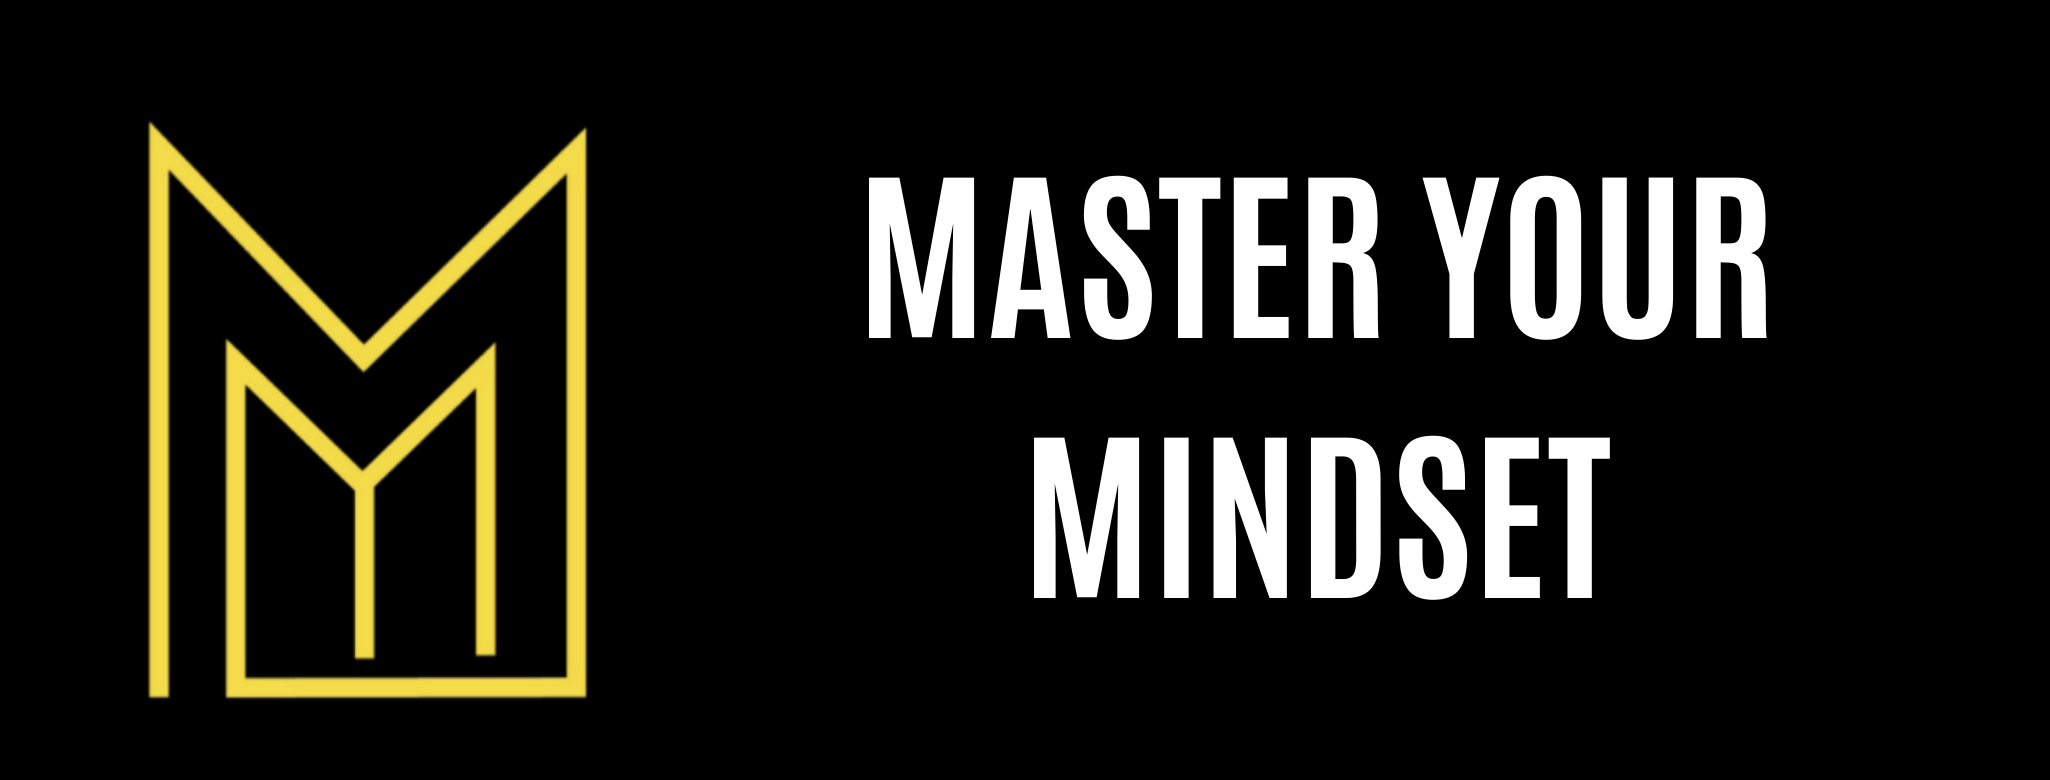 master your mindset tour